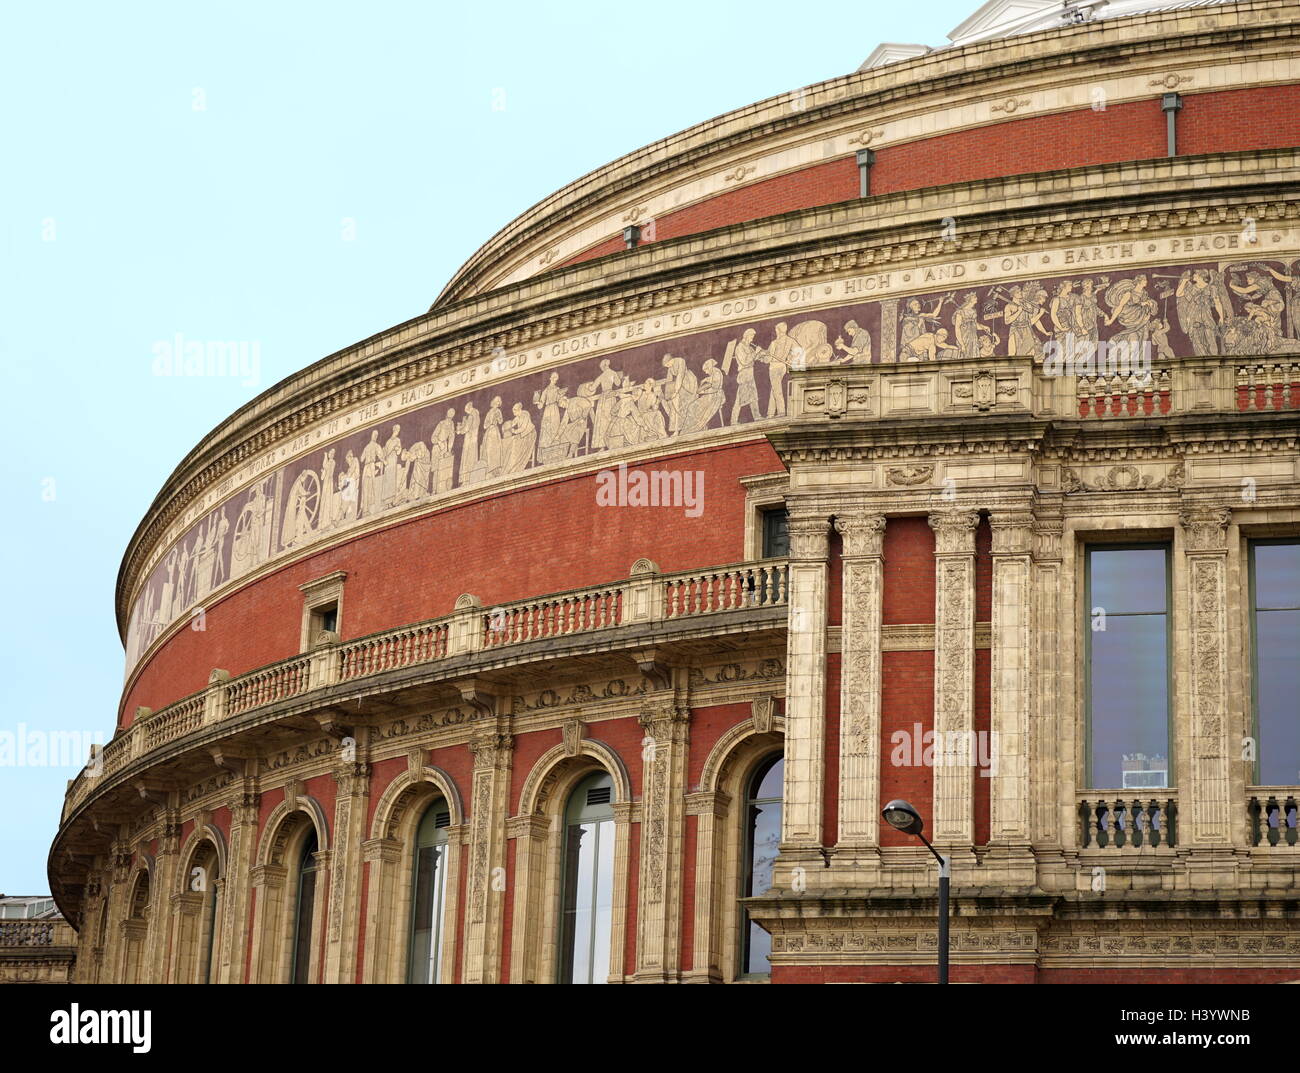 Die Royal Albert Hall ist eine Konzerthalle in South Kensington, London. Es hat eine Kapazität von bis zu 5,272 Personen. Seit seiner Eröffnung durch Königin Victoria 1871, führende Künstler der Welt aus vielen Genres auf der Bühne erschien. Die Halle war ursprünglich wurde die zentrale Halle der Künste und Wissenschaften genannt zu haben, aber der Name wurde in der Royal Albert Hall der Künste und der Wissenschaften von Königin Victoria bei der Festlegung der Grundstein der Halle im Jahre 1867, in Erinnerung an ihren Ehemann consort geändert, Prinz Albert, der sechs Jahre zuvor gestorben war. Stockfoto